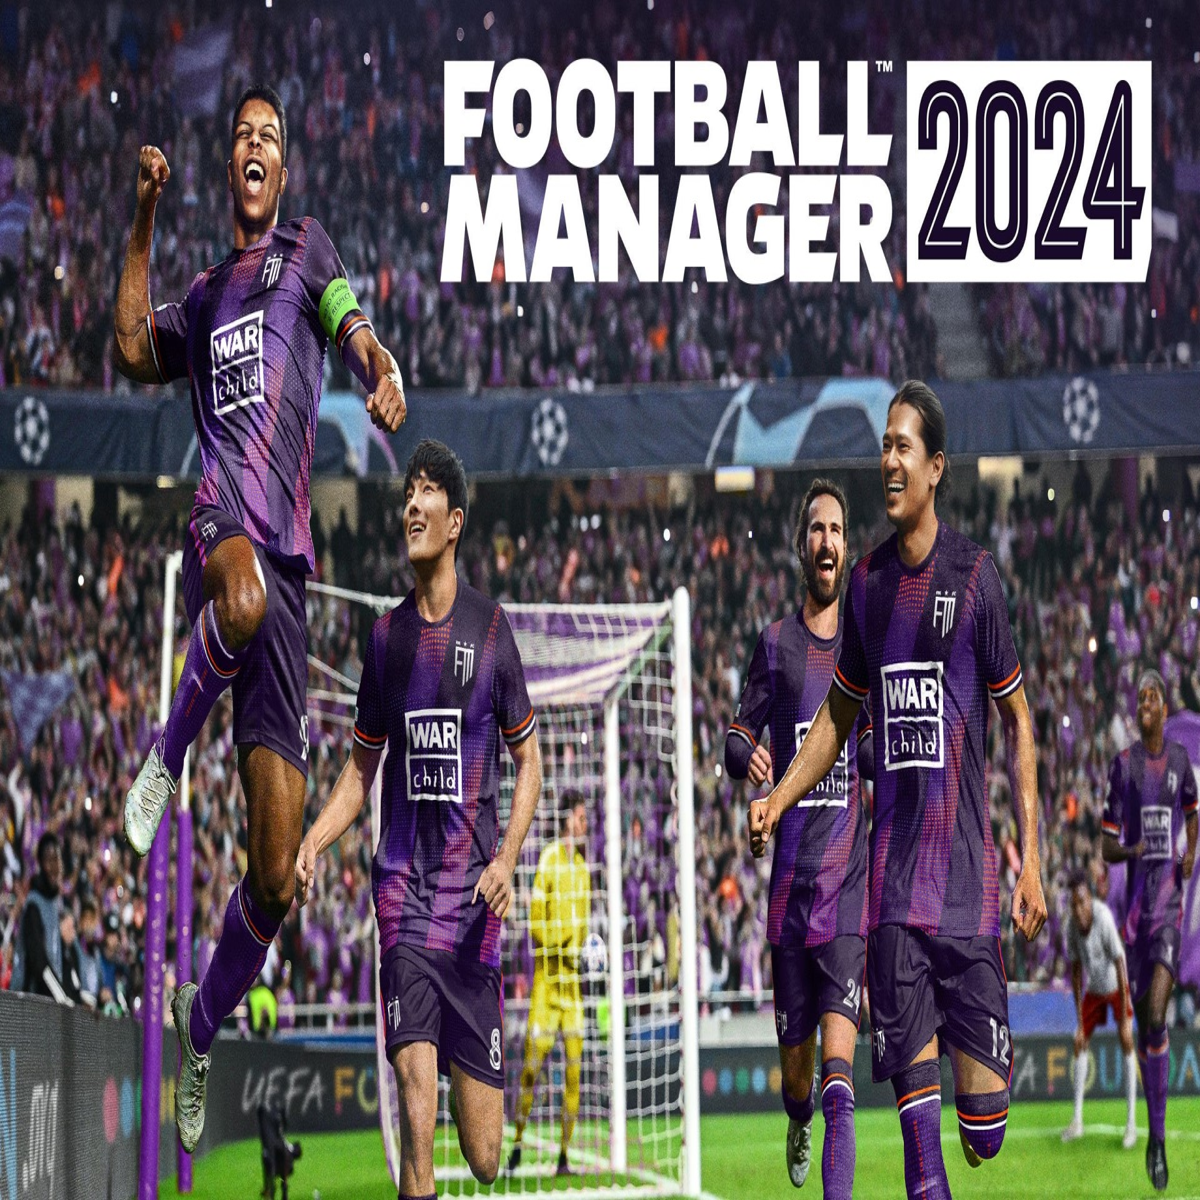 Football Manager 2021 - Jogo de Futebol para PC e Celular